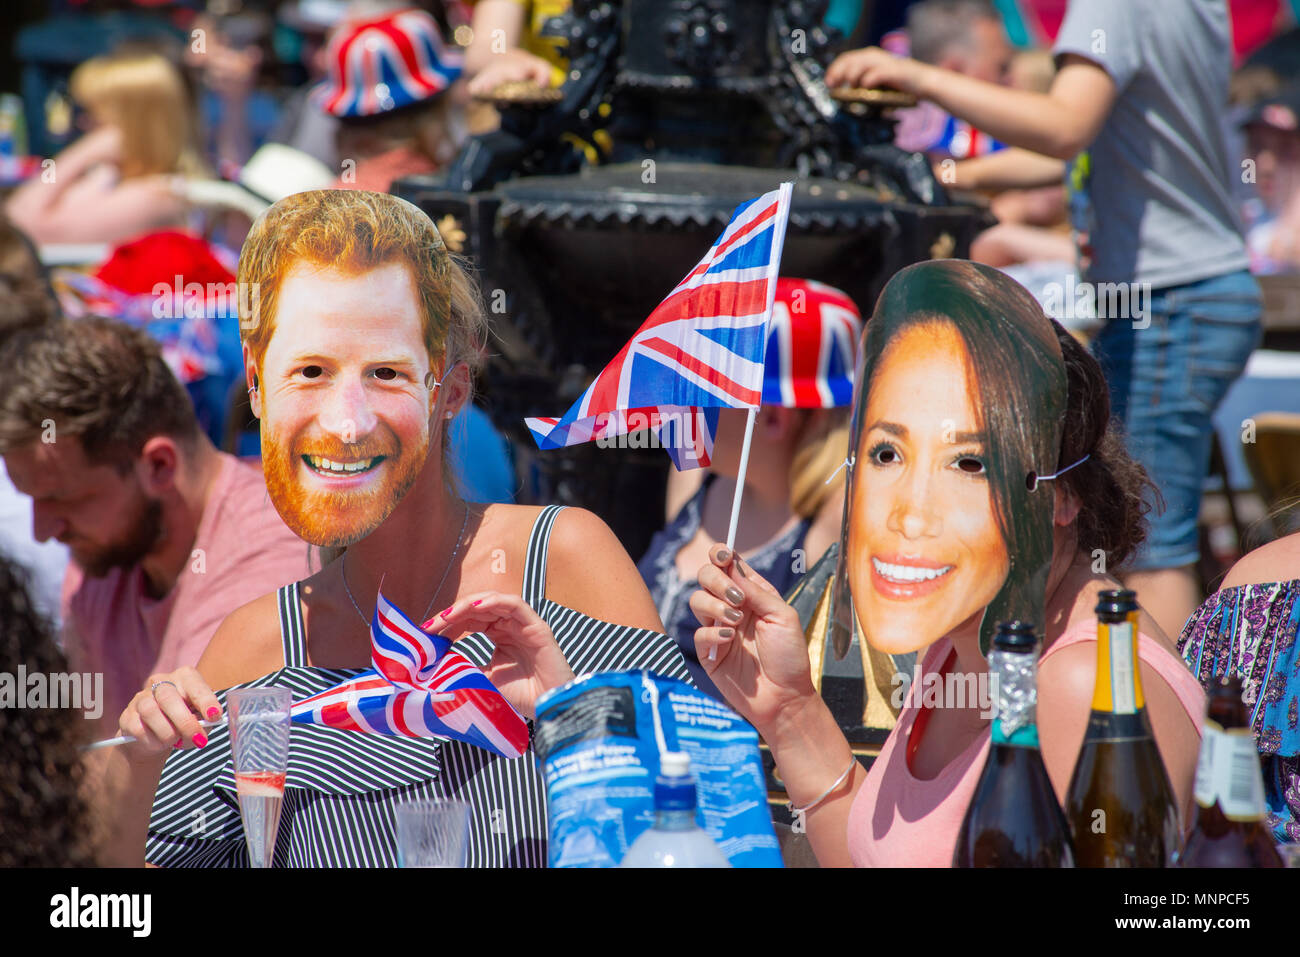 Des gens portant des masques de Prince Harry et Meghan Markle et des drapeaux d'Union Jack à une fête de rue pour observer et célébrer le mariage royal. Ringwood, Hampshire, Angleterre, Royaume-Uni, 19th mai 2018. Banque D'Images